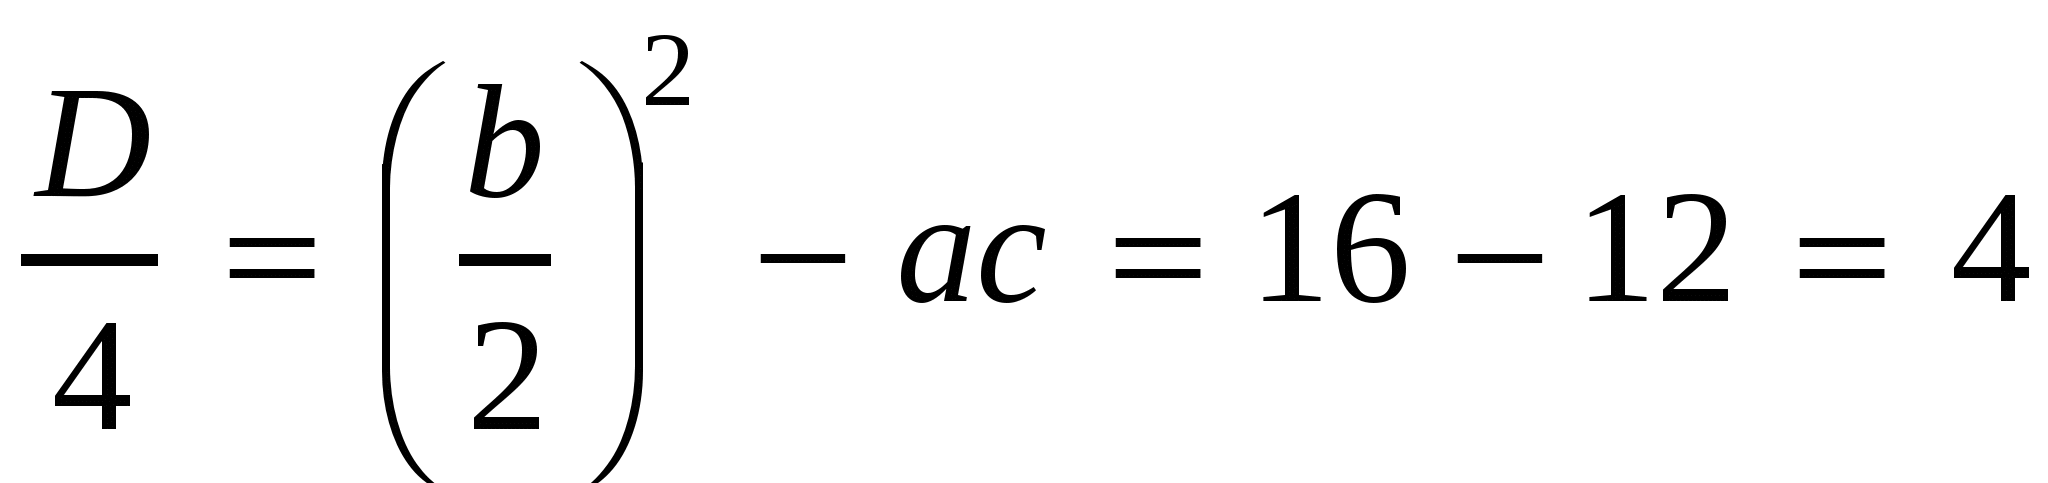 Конспект урока по алгебре и началам математического анализа на тему Уравнения, сводящиеся к простейшим заменой неизвестного (10 класс)